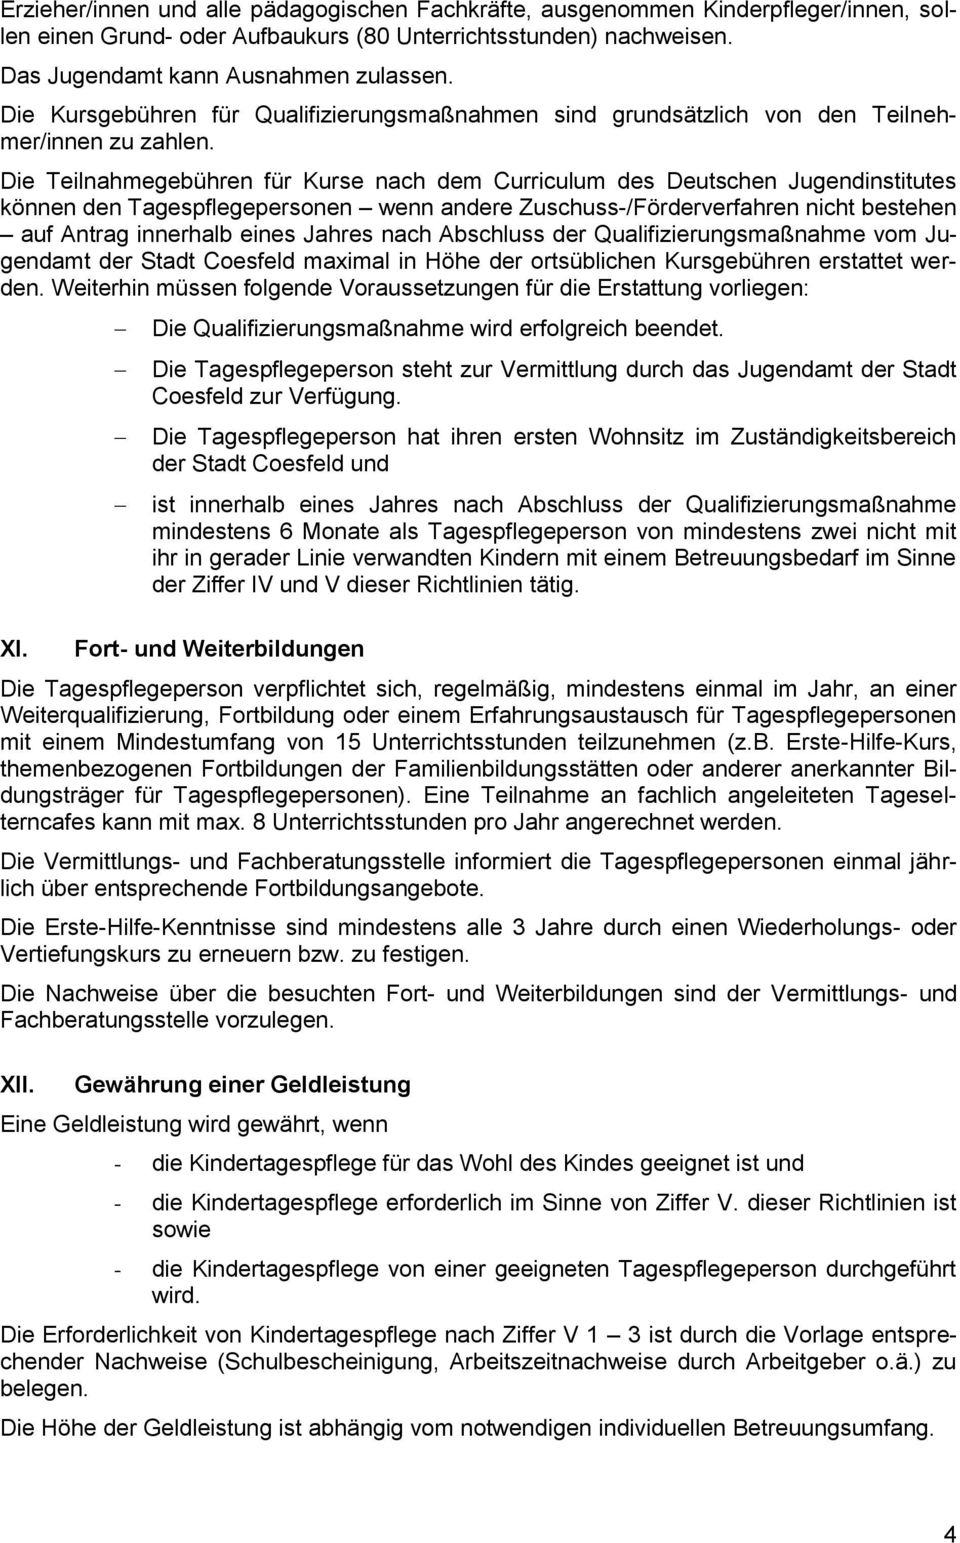 Die Teilnahmegebühren für Kurse nach dem Curriculum des Deutschen Jugendinstitutes können den Tagespflegepersonen wenn andere Zuschuss-/Förderverfahren nicht bestehen auf Antrag innerhalb eines